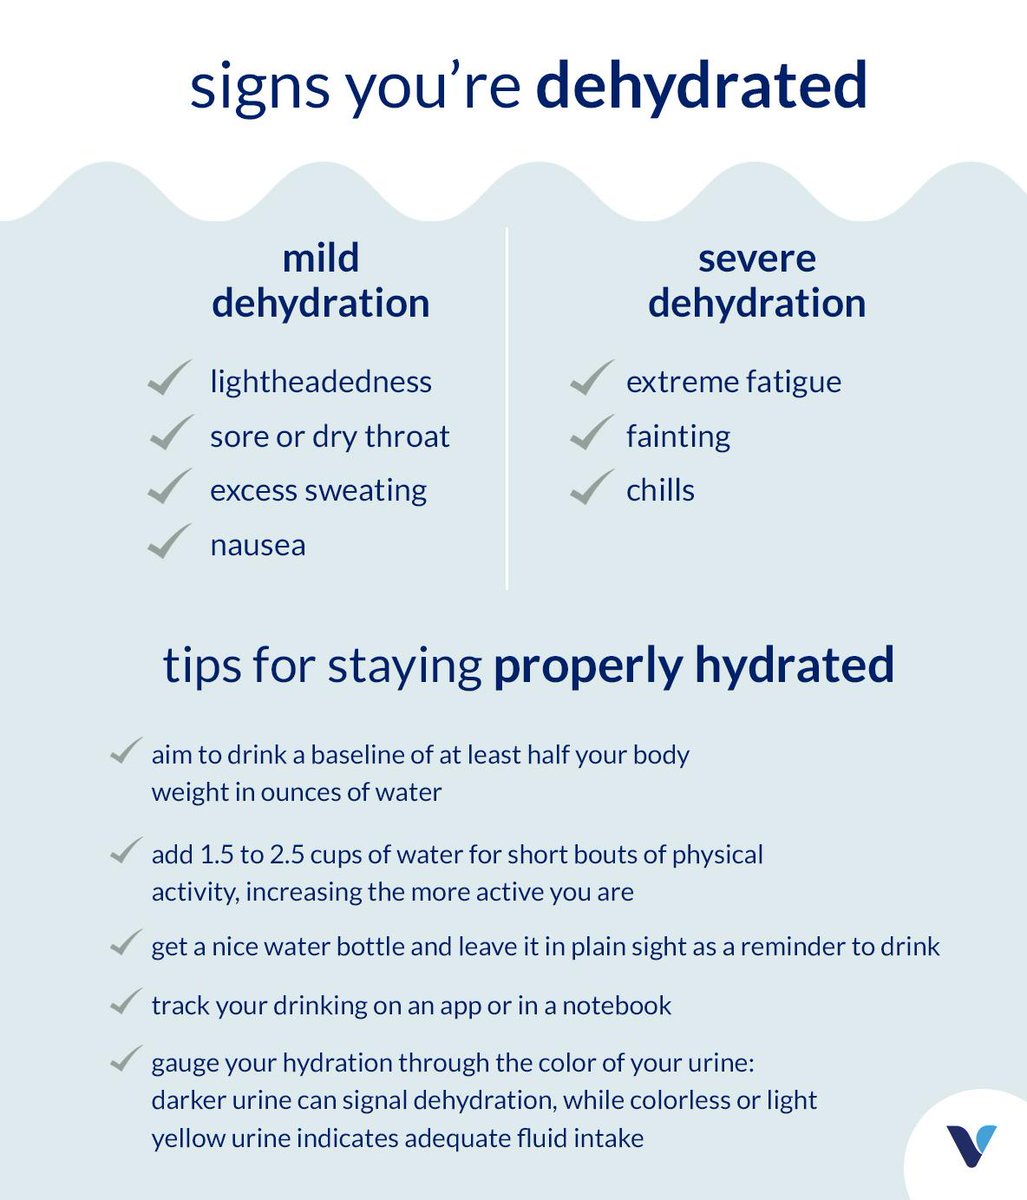 טוויטר \ The Vitamin Shoppe בטוויטר: "Here's what you should know about dehydration so you can avoid the short- long-term it. https://t.co/ACCW39B8Is"